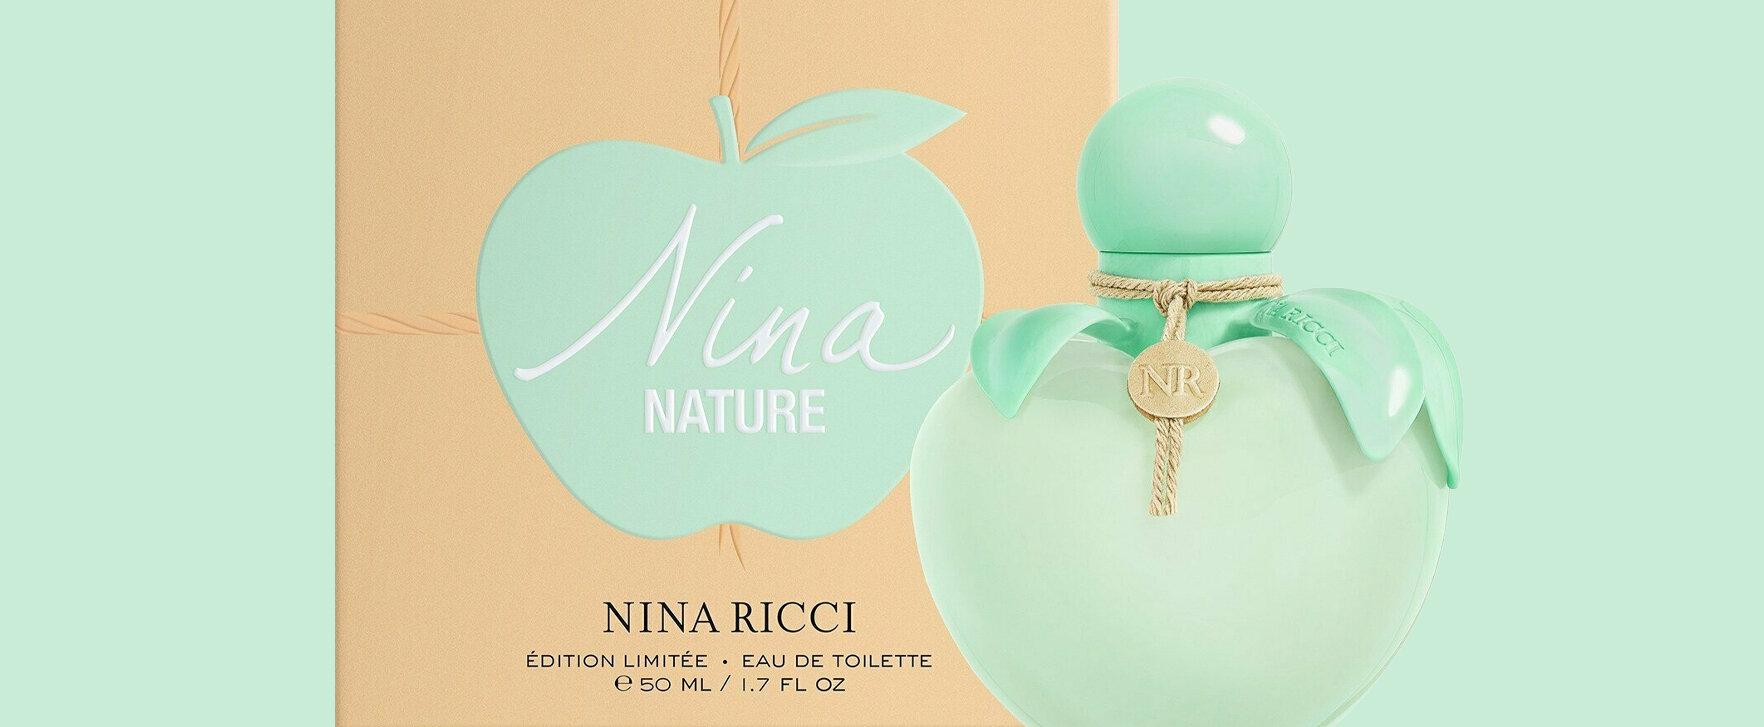 Umweltfreundlich und frisch: Nina Ricci lanciert den Duft „Nina Nature“ in limitierter Auflage